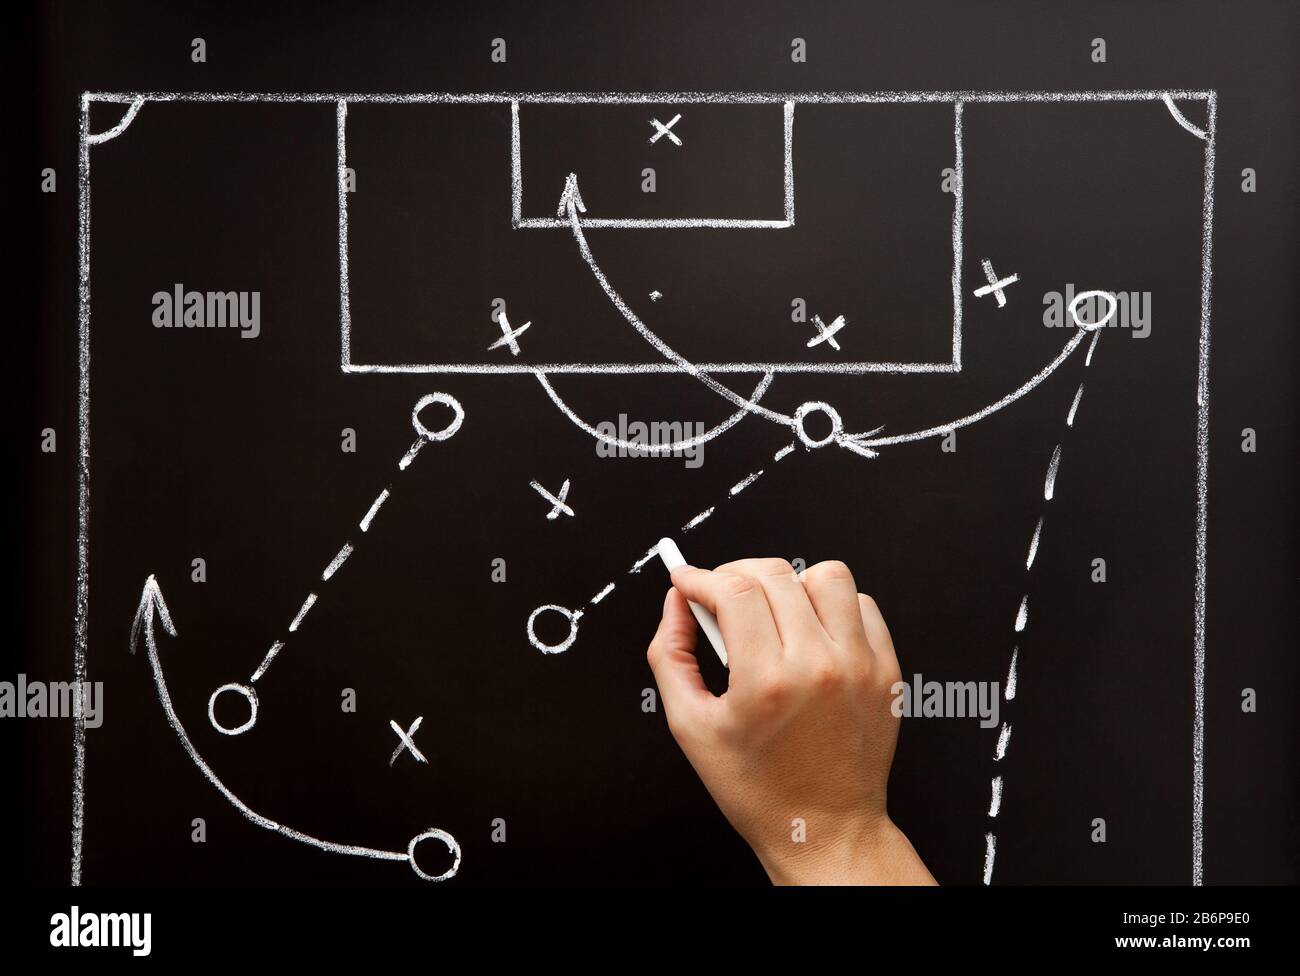 Entrenador de fútbol de fútbol juego de dibujo playbook, tácticas